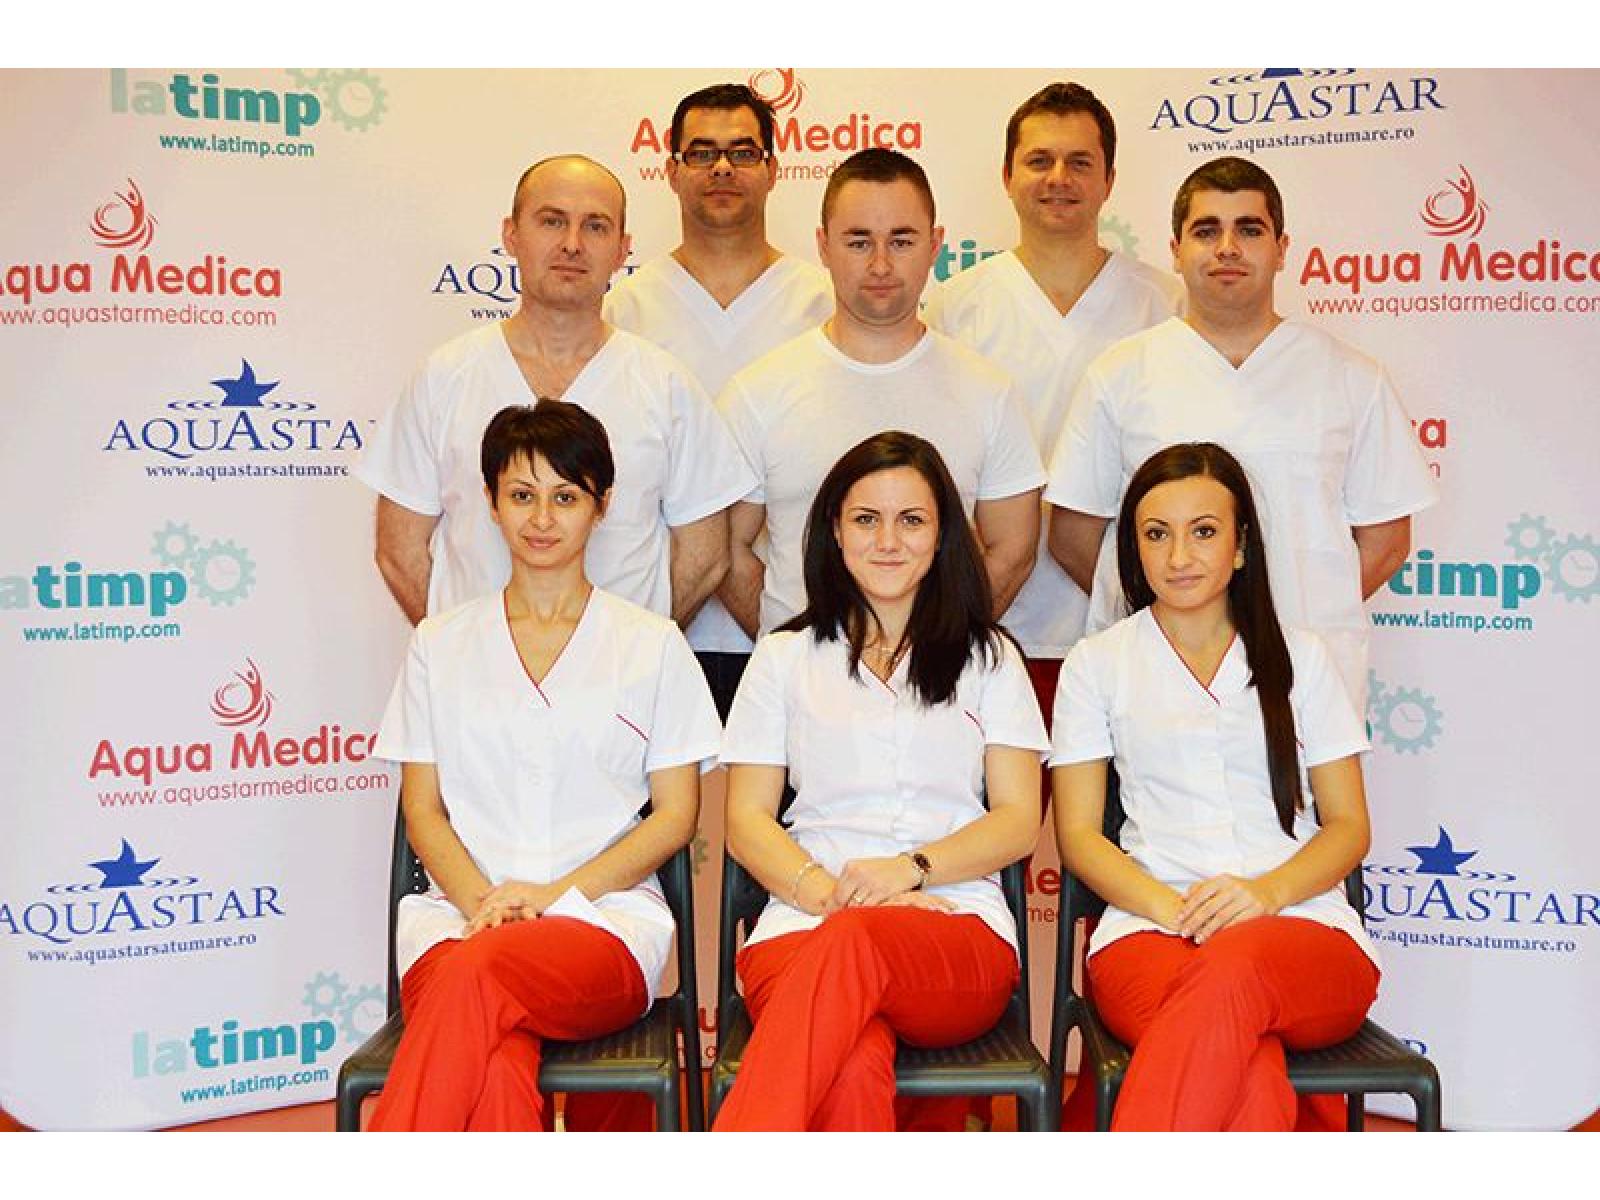 Aqua Medica - aqua-team.jpg